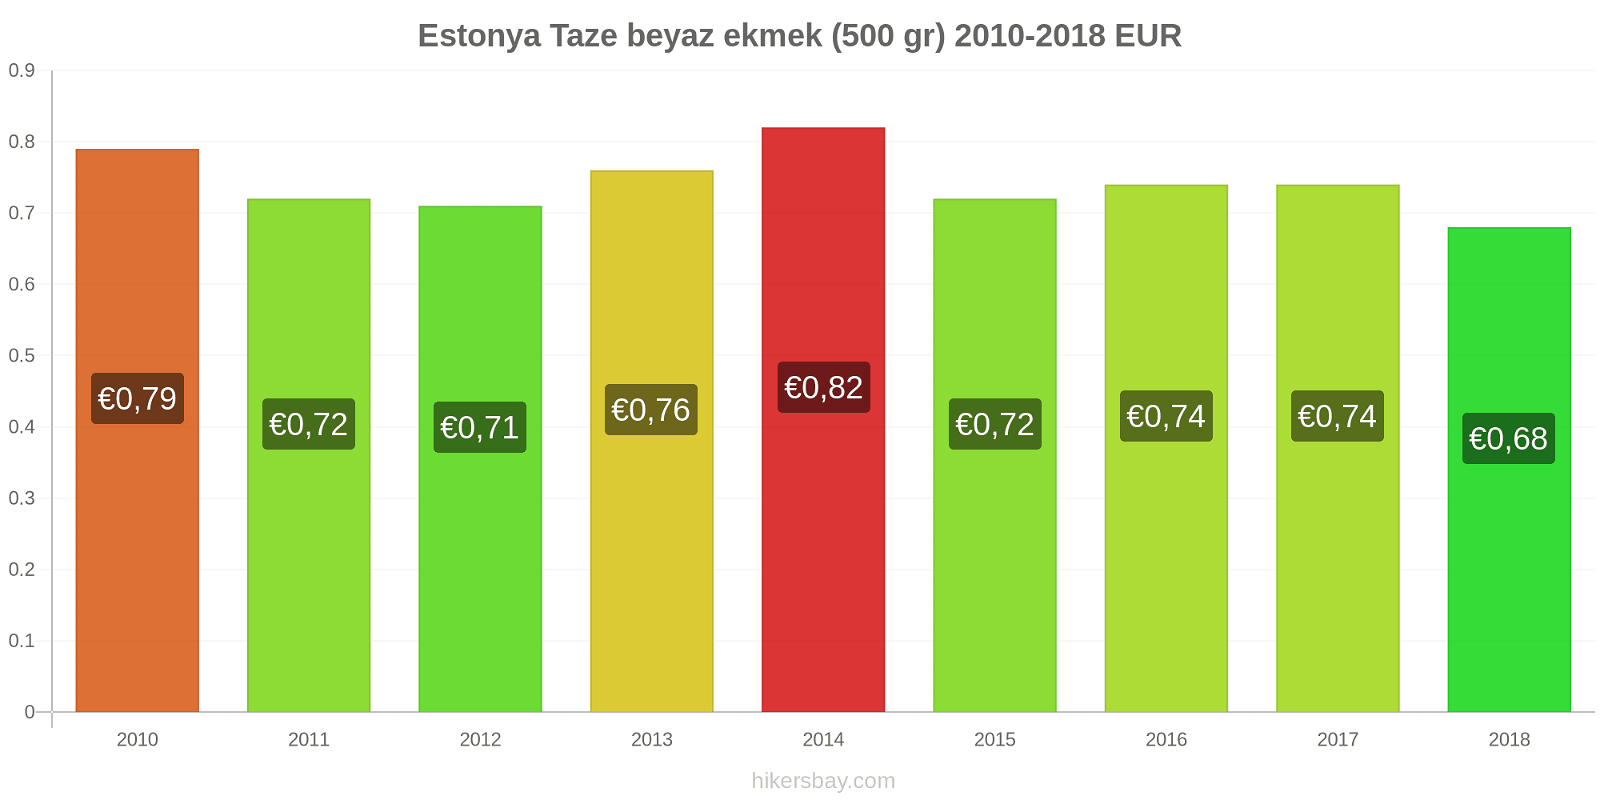 Estonya fiyat değişiklikleri Taze beyaz ekmek (500 gr) hikersbay.com